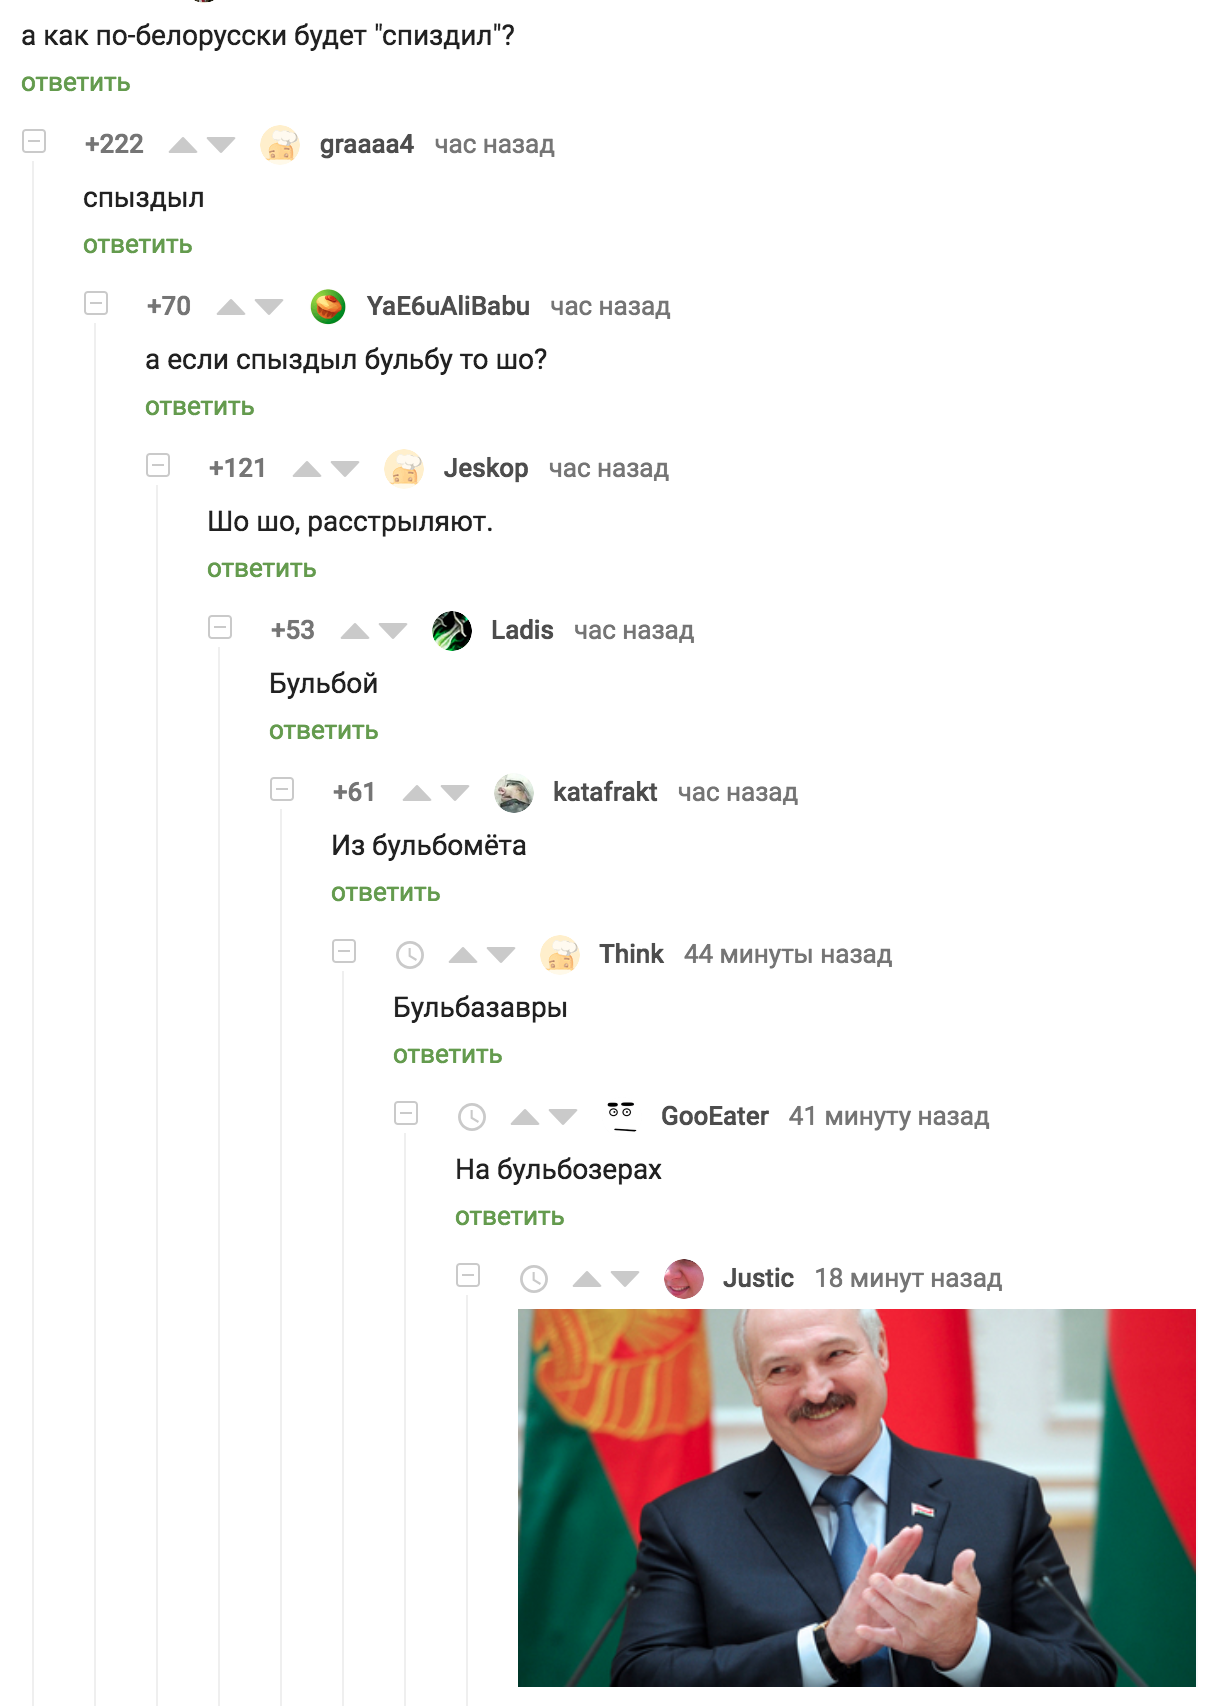 Belarus - Comments on Peekaboo, Mat, Bulba, Belarus vs Belarus, Republic of Belarus